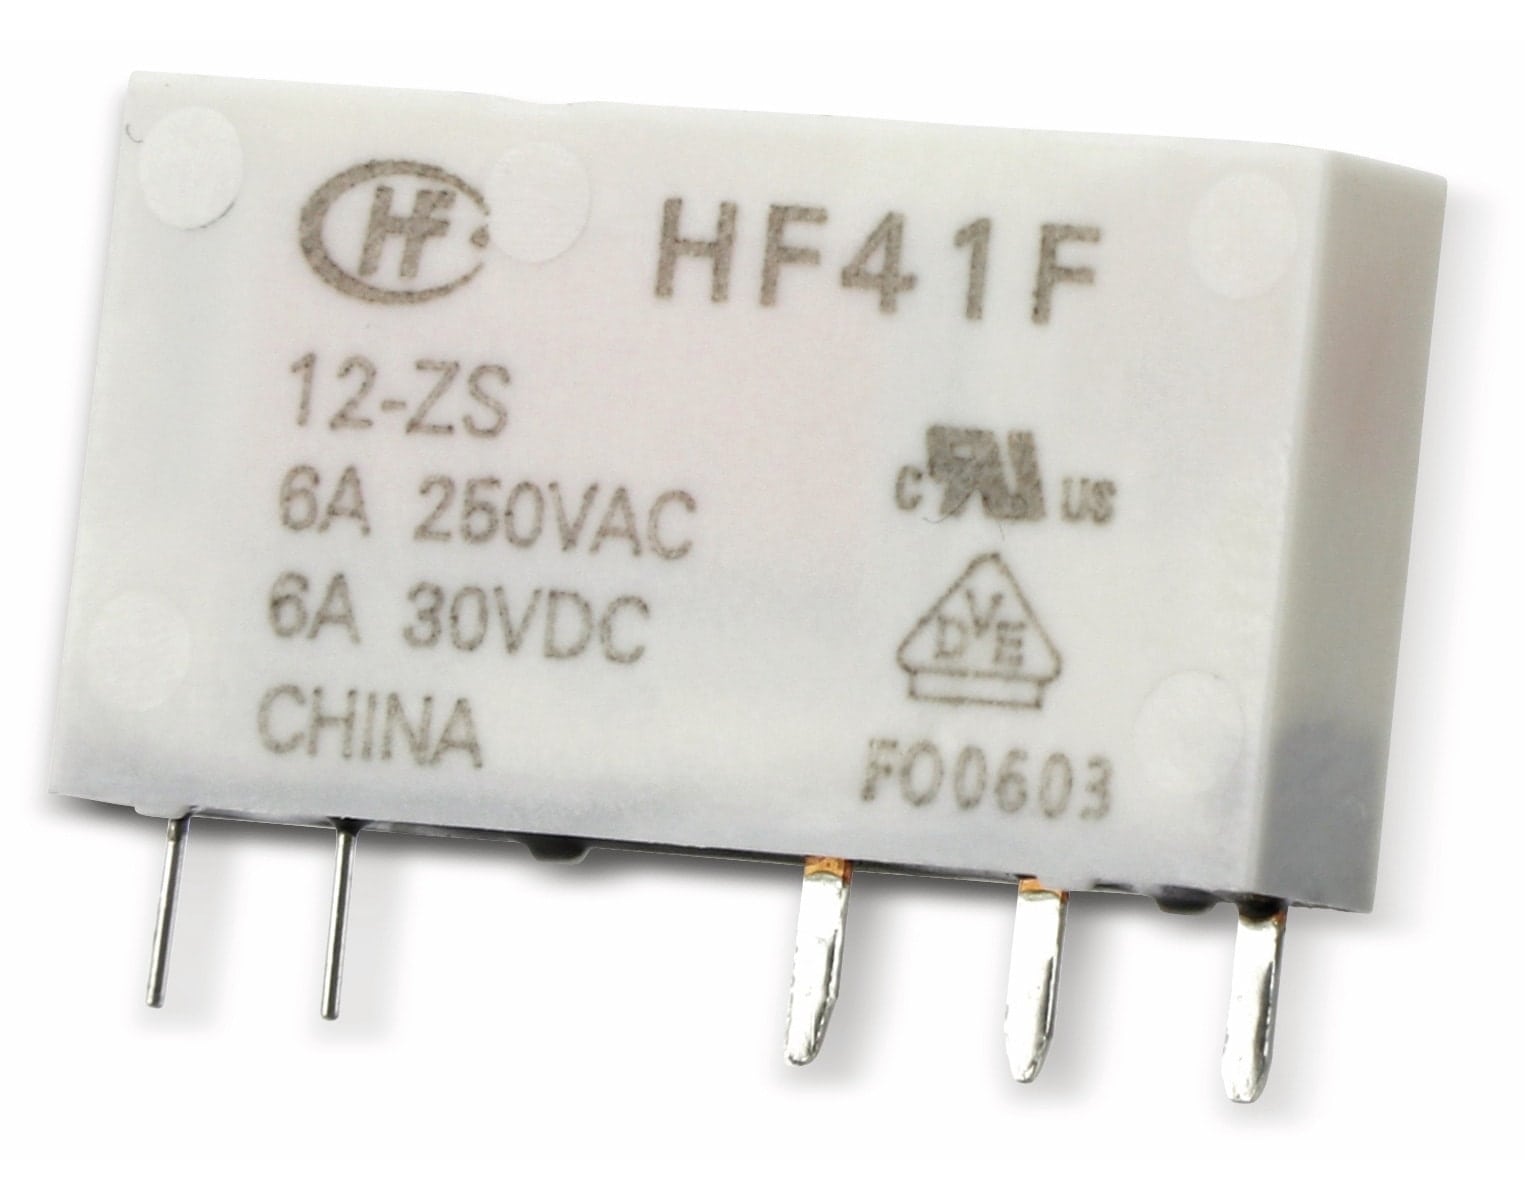 HONGFA Printrelais HF41F/024-ZS